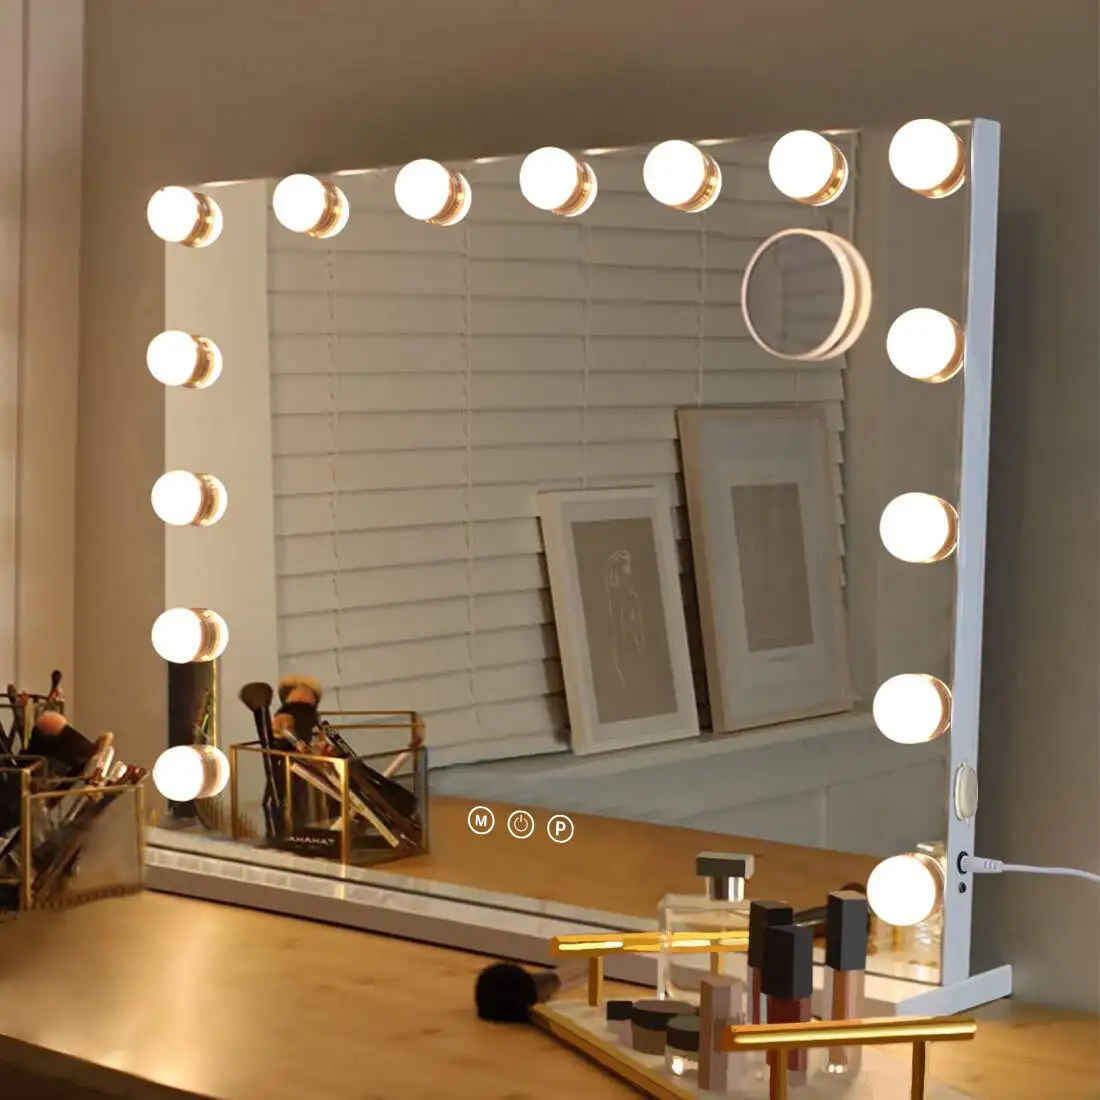 메이크업 거울 할리우드 스타일 LED 허영 거울 14 터치 주차 LED 전구 메이크업 드레싱 테이블